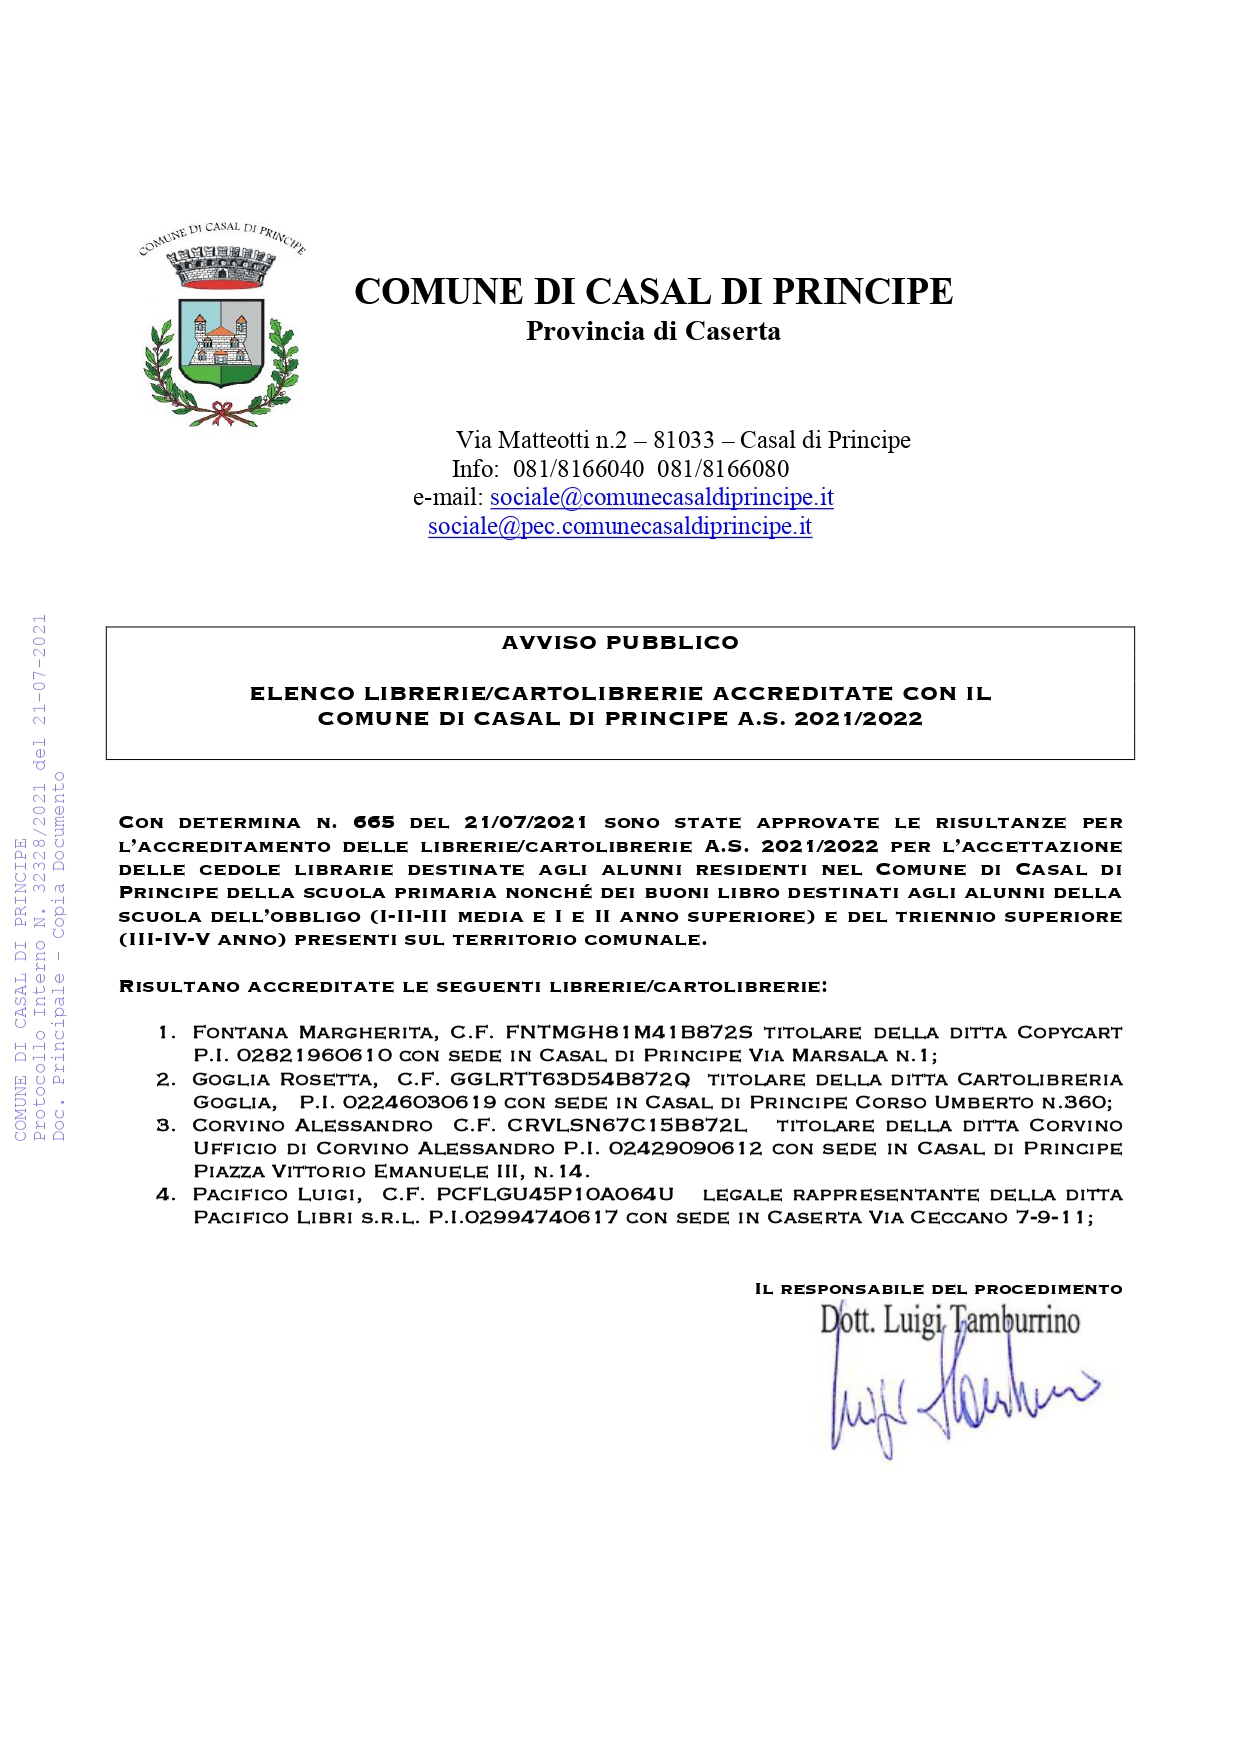 AVVISO PUBBLICO: ELENCO LIBRERIE/CARTOLIBRERIE ACCREDITATE CON IL  COMUNE DI CASAL DI PRINCIPE A.S. 2021/2022